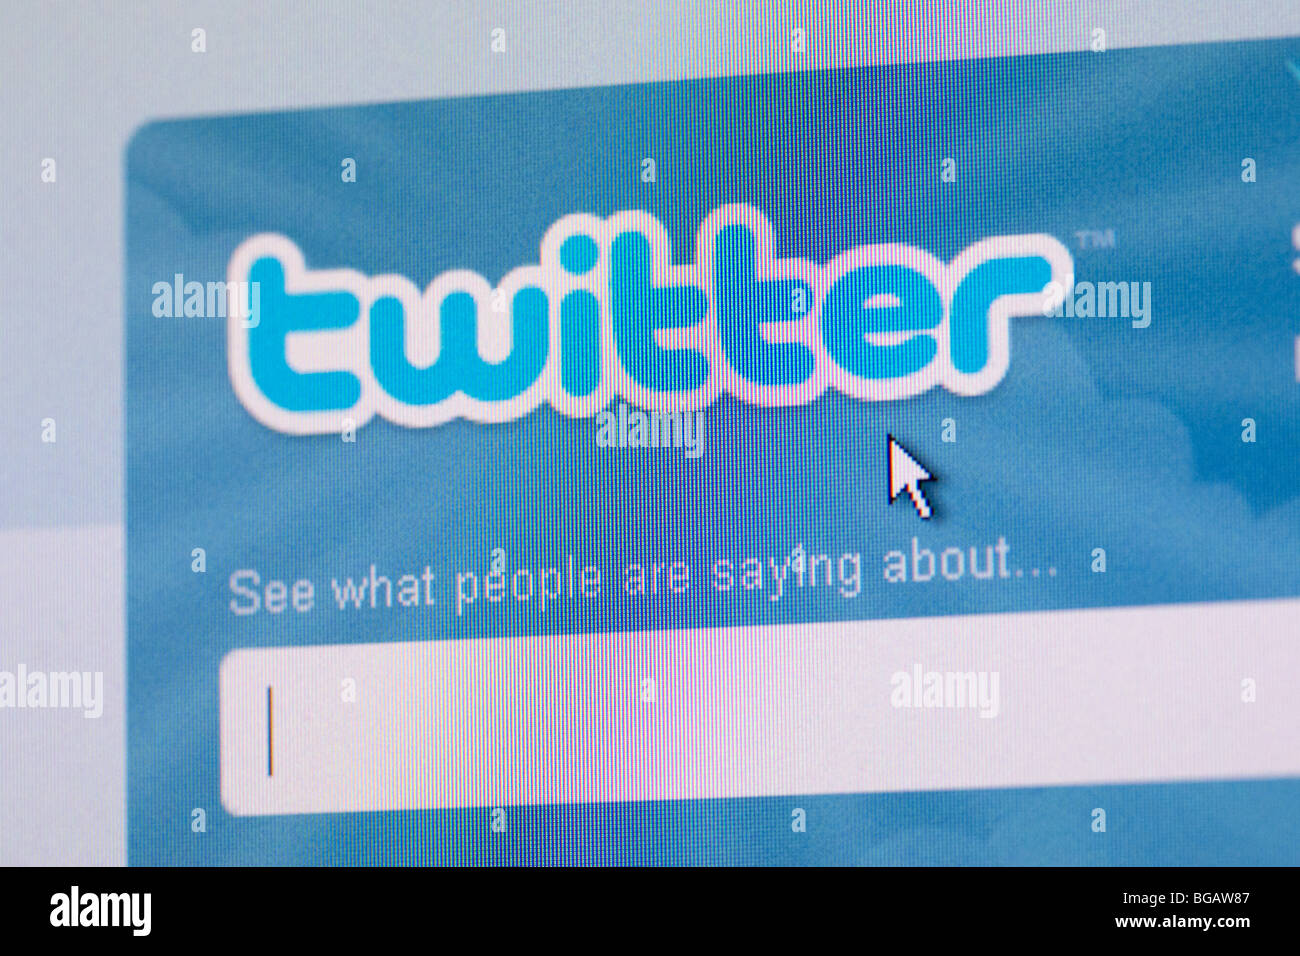 Capture d'écran de champ de recherche sur twitter site web de réseautage social pour un usage éditorial uniquement Banque D'Images